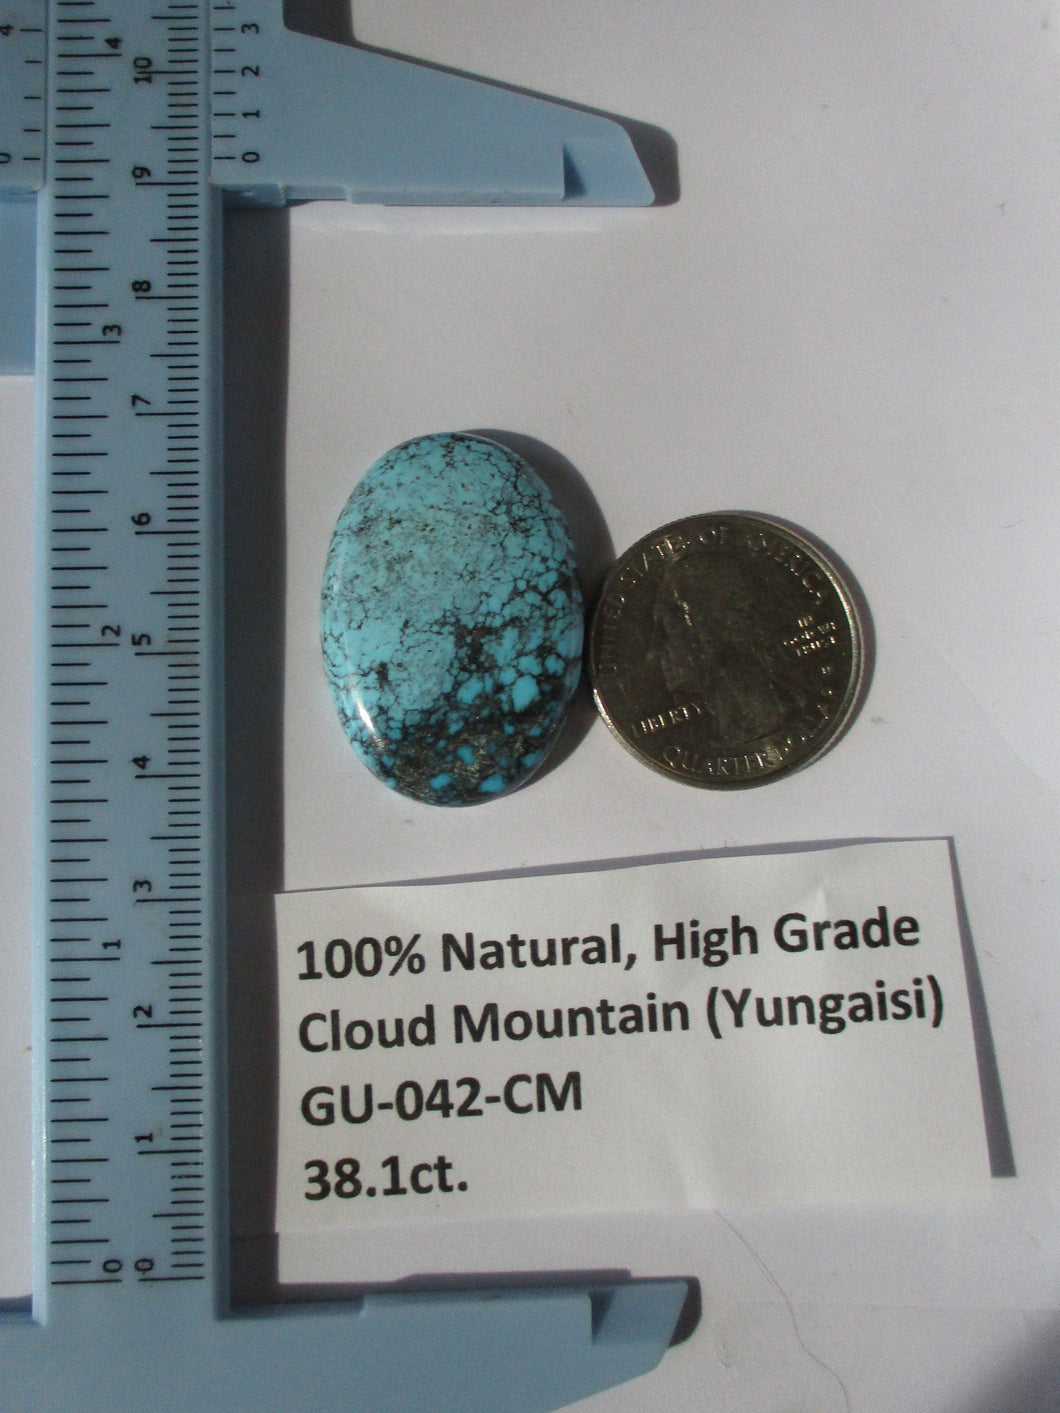 38.1 ct. (32x23x6 mm) 100% Natural High Grade Web Cloud Mountain (Yungaishi) Turquoise Cabochon Gemstone, GU 042